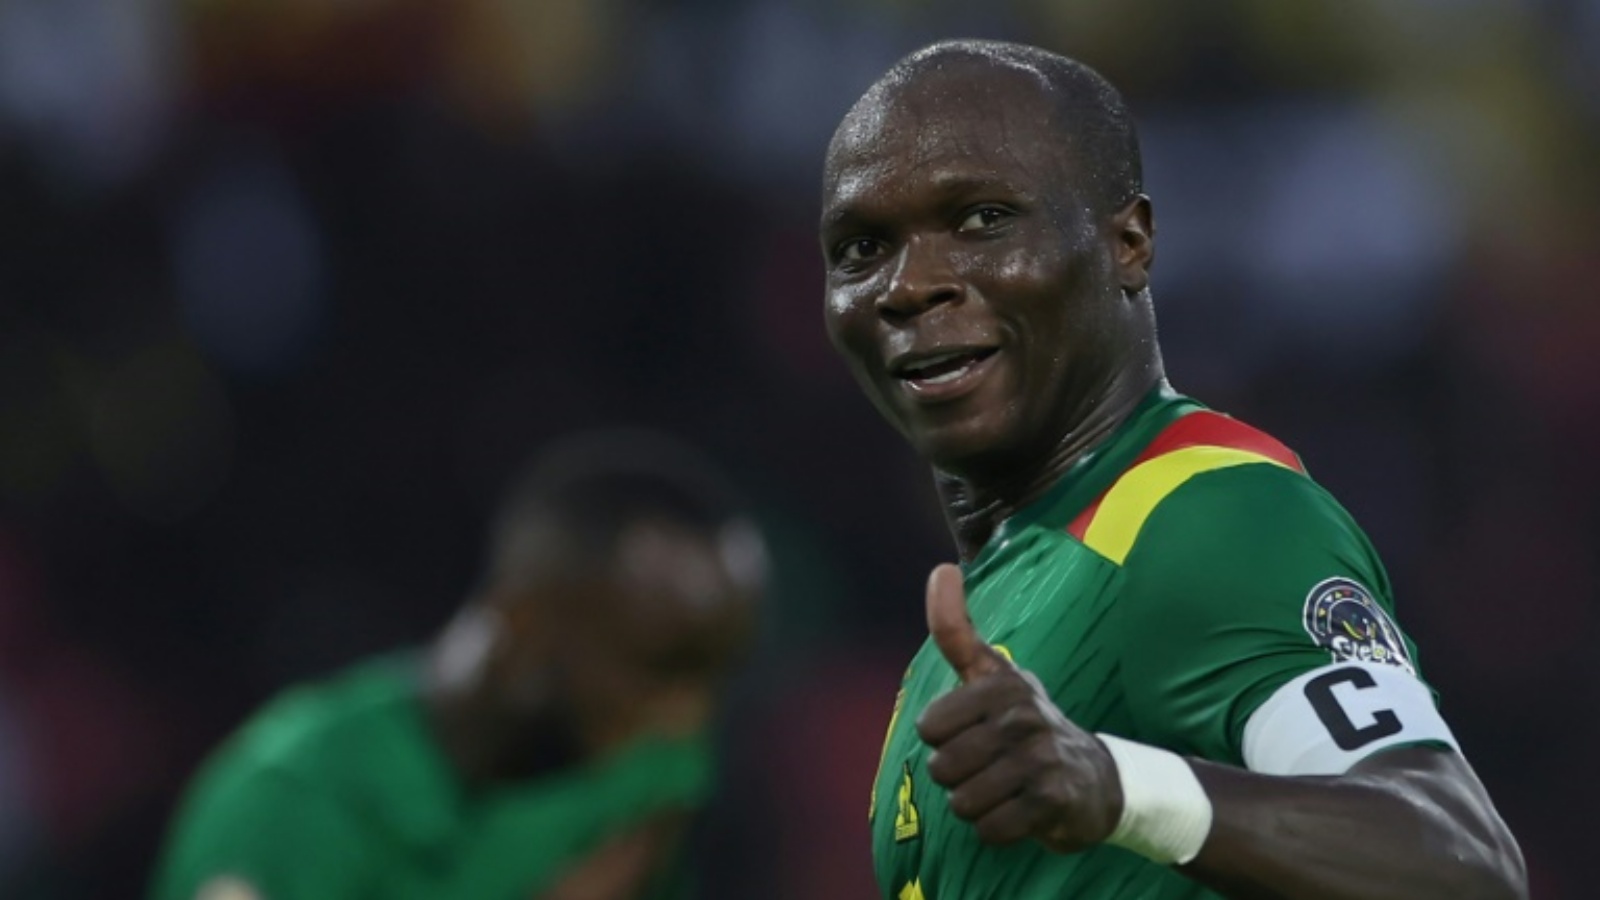 فنسان أبو بكر يعد أبرز نجوم كأس أمم إفريقيا مع المنتخب الكاميروني مسجلاً حتى اللحظة ستة أهداف